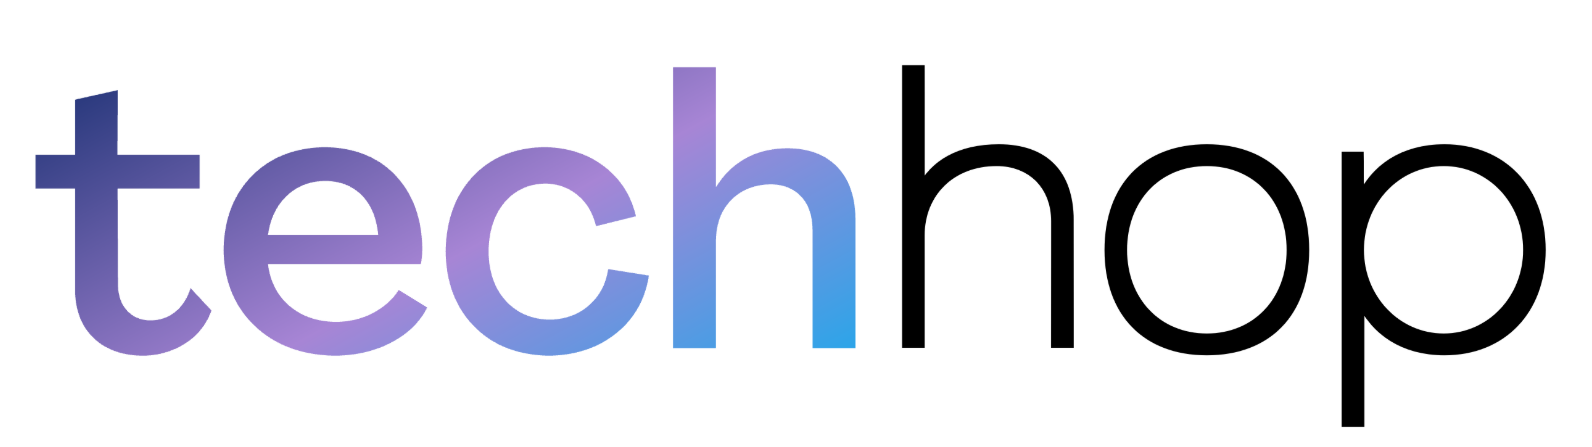 Techhop logo